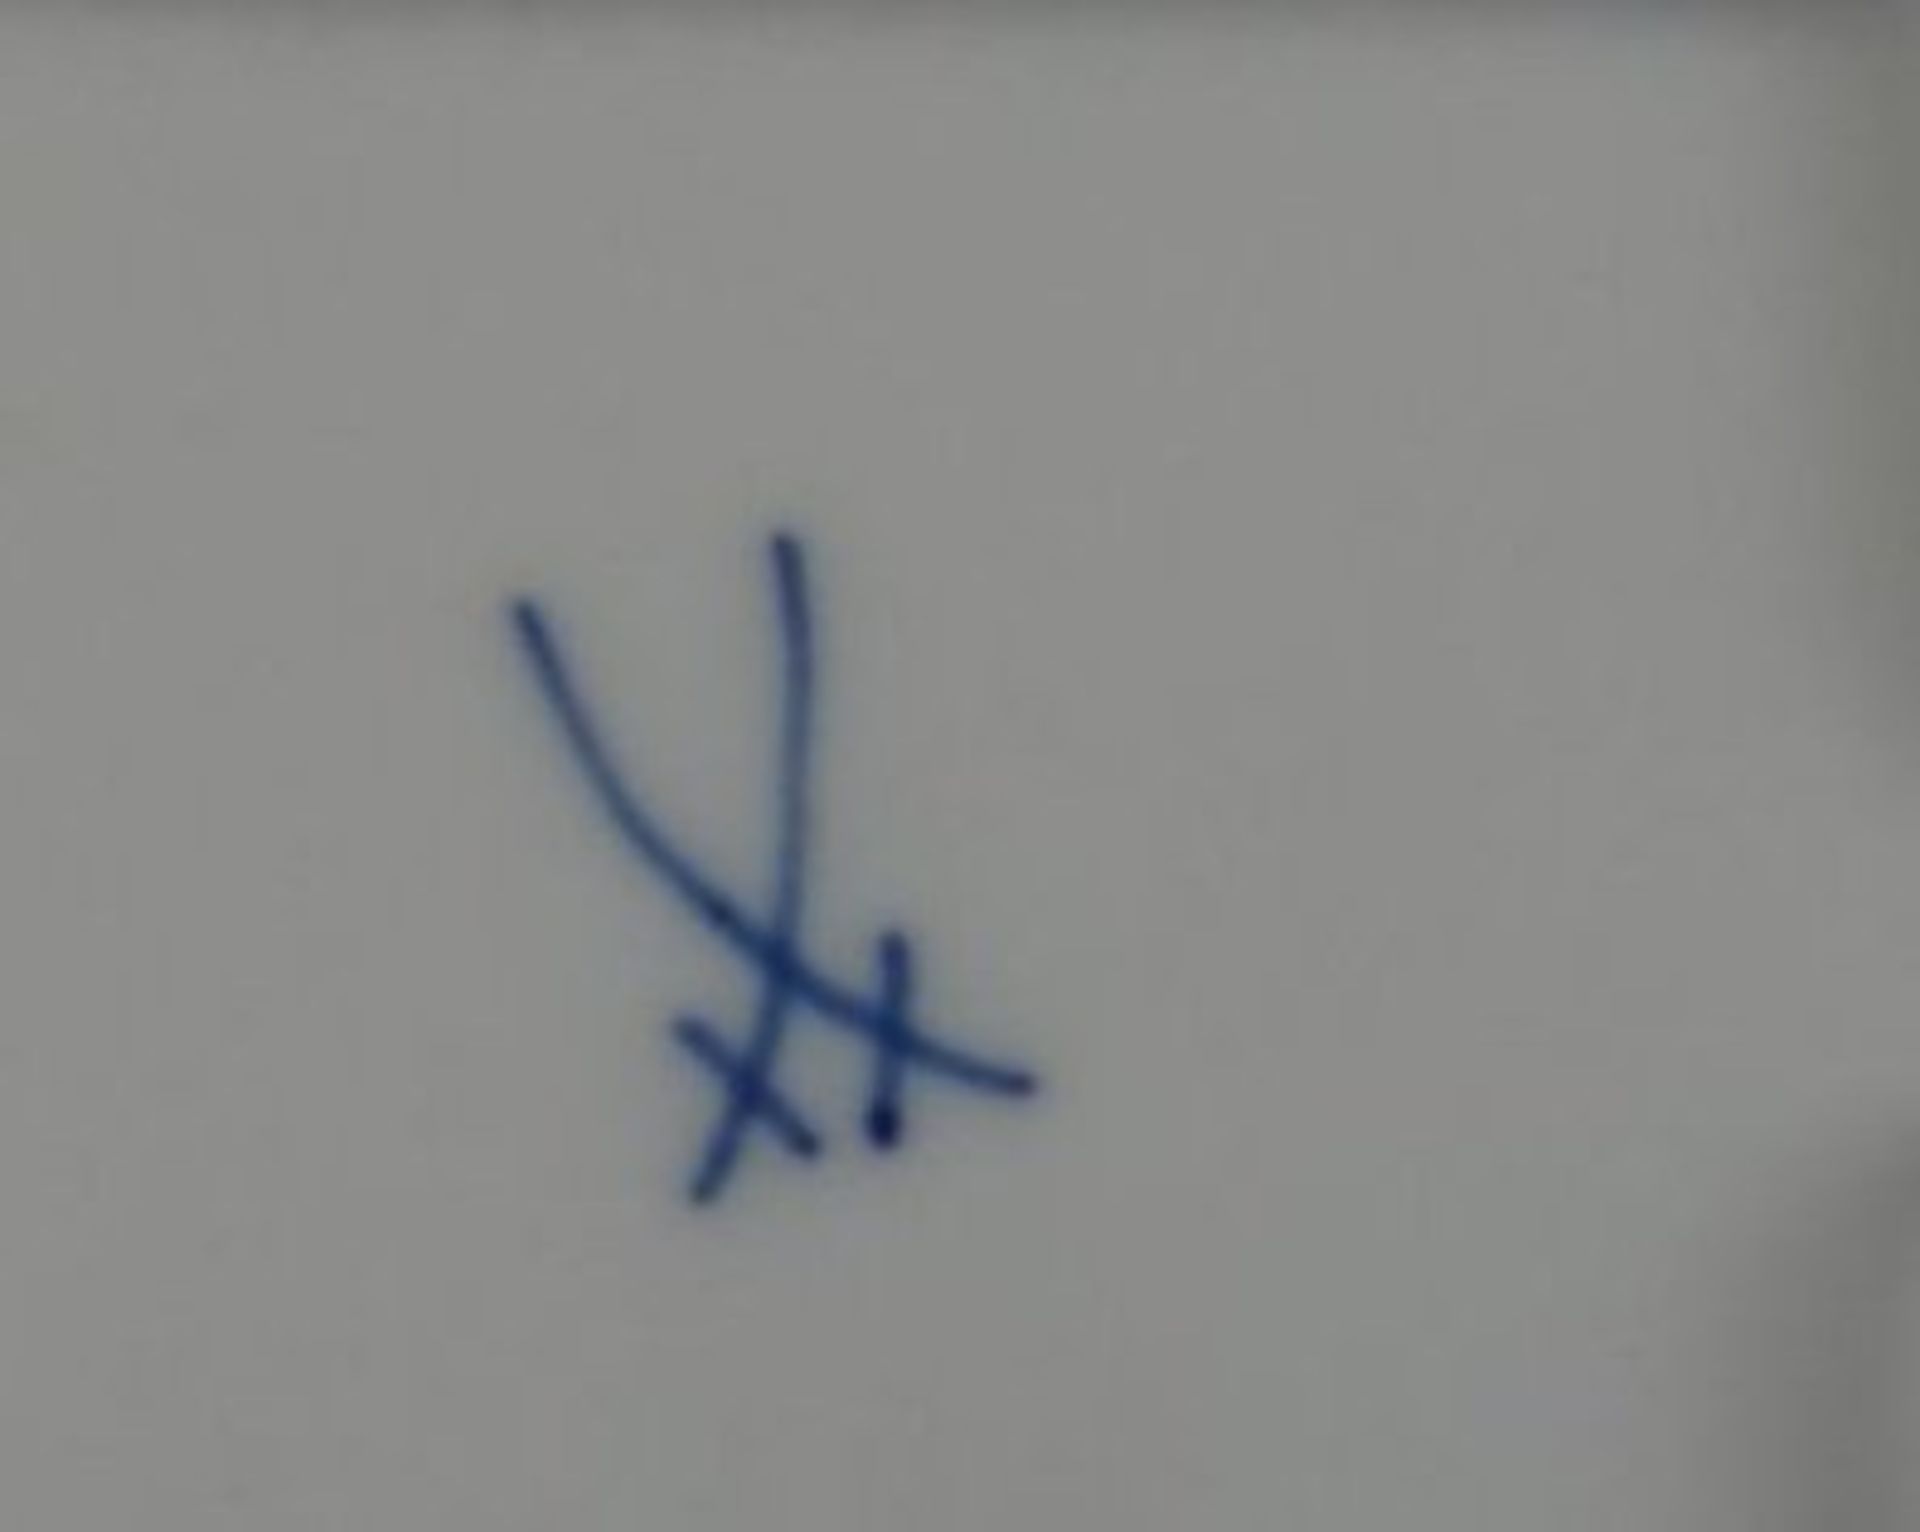 runder Teller "Meissen" purpur  Drache, D-18,5 cm, 1.Wahl - Bild 3 aus 3